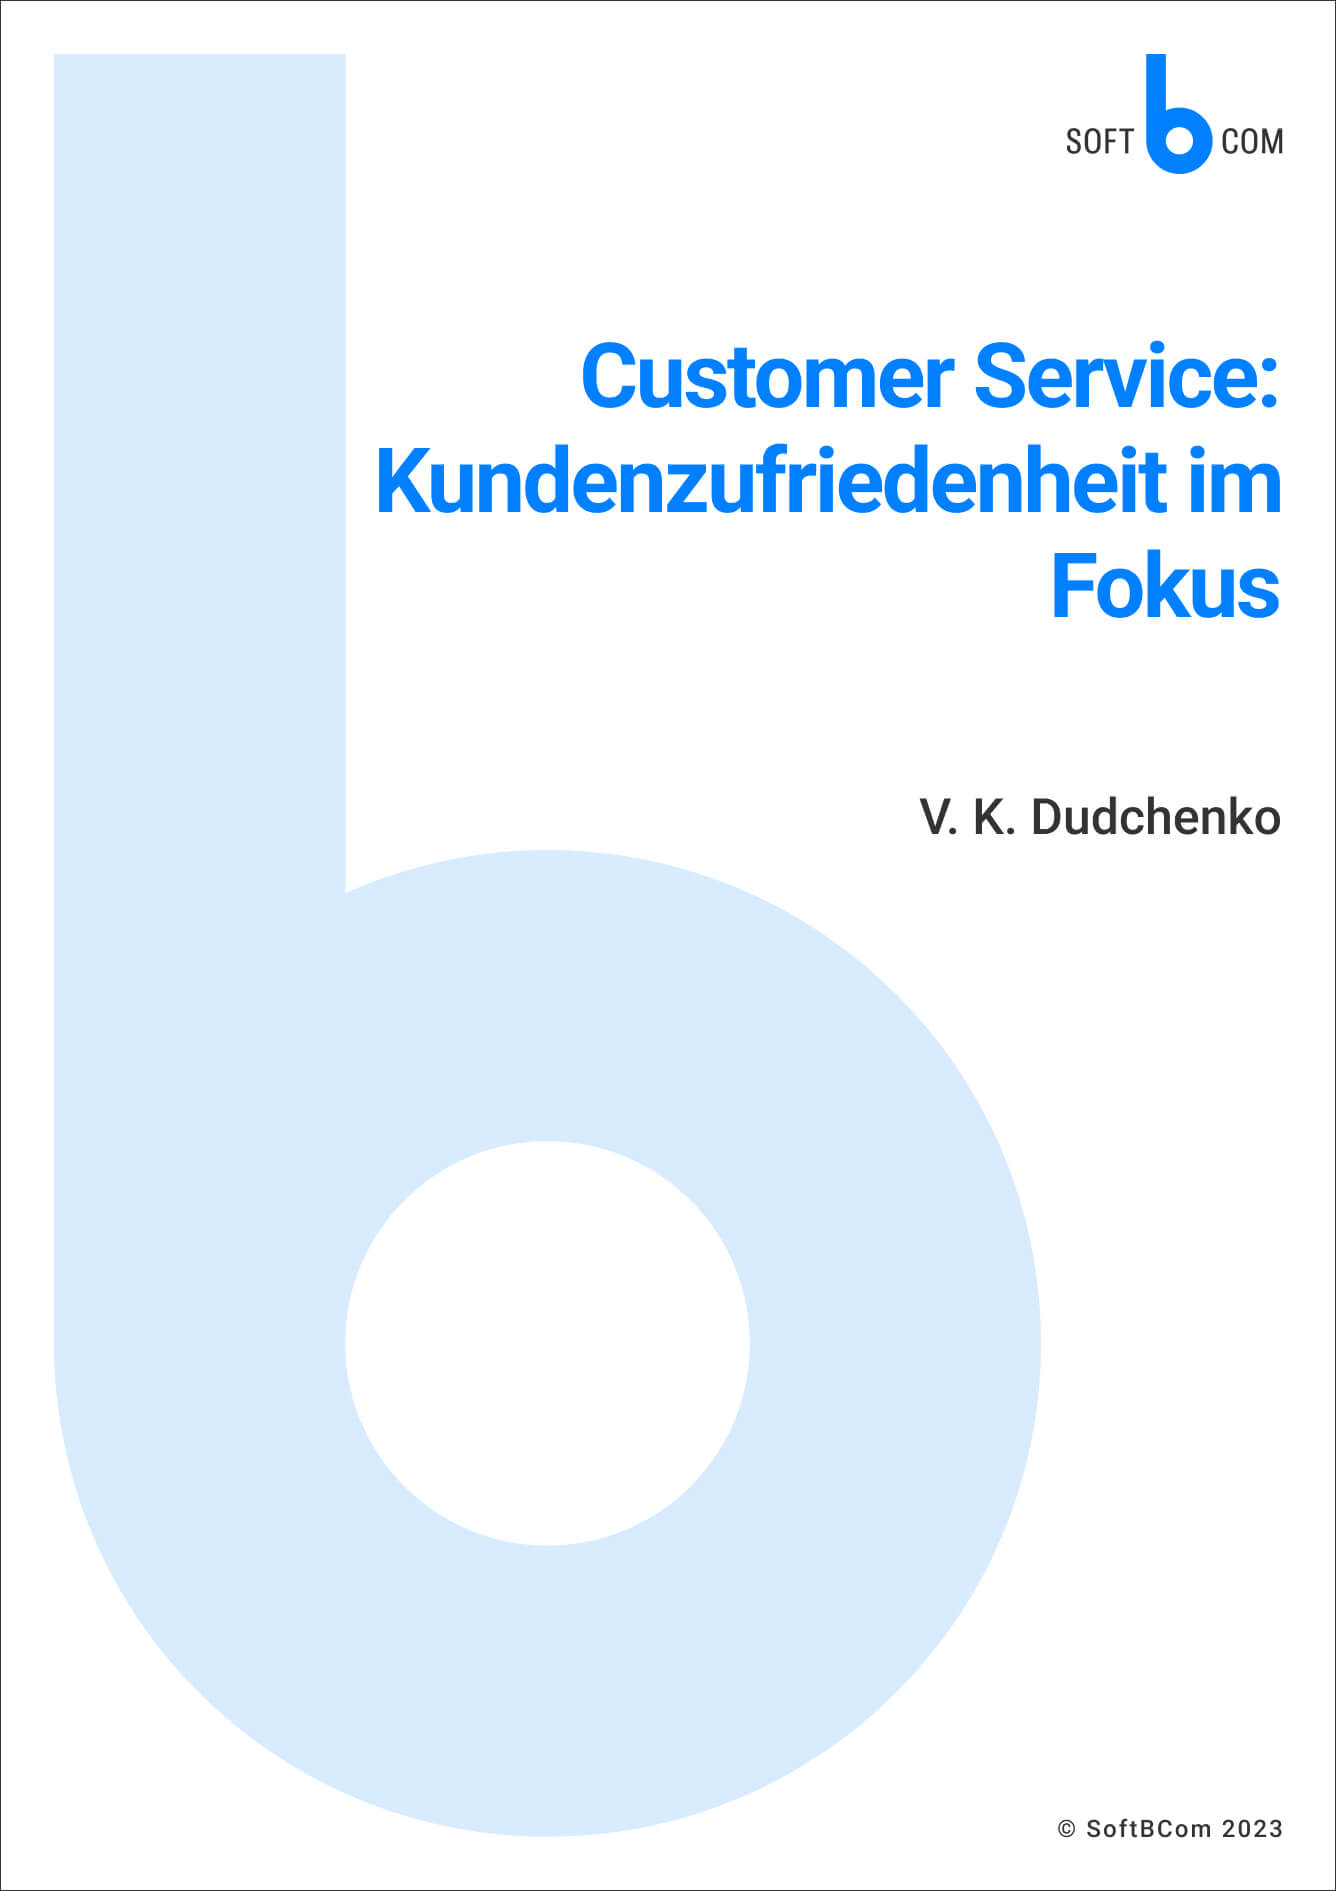 Customer Service_ Kundenzufriedenheit im Fokus